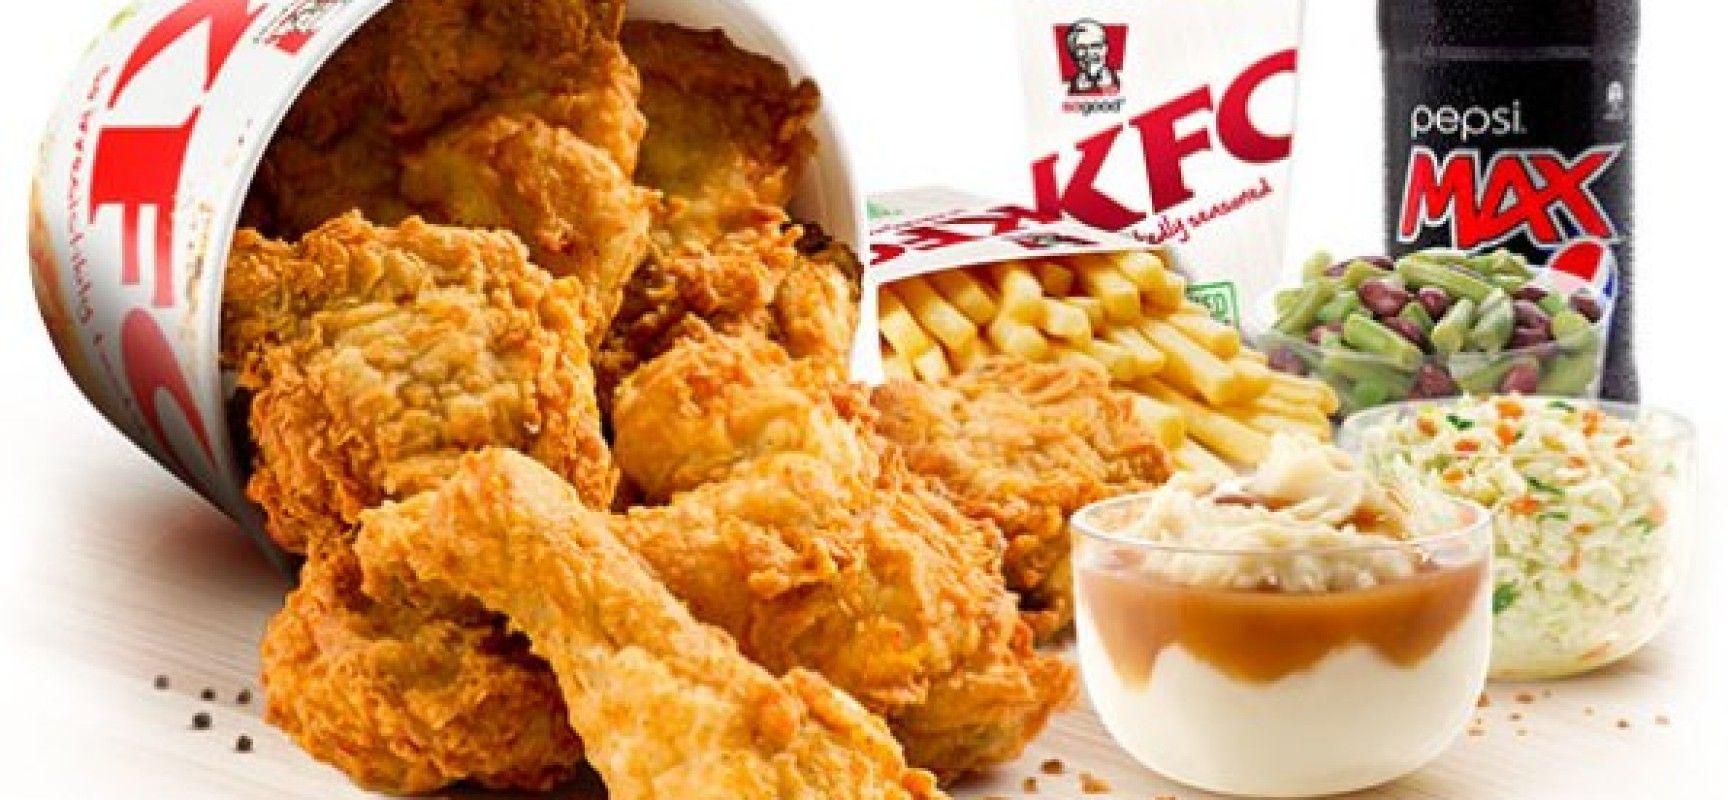 1728x800px 300.79 KB Kentucky Fried Chicken